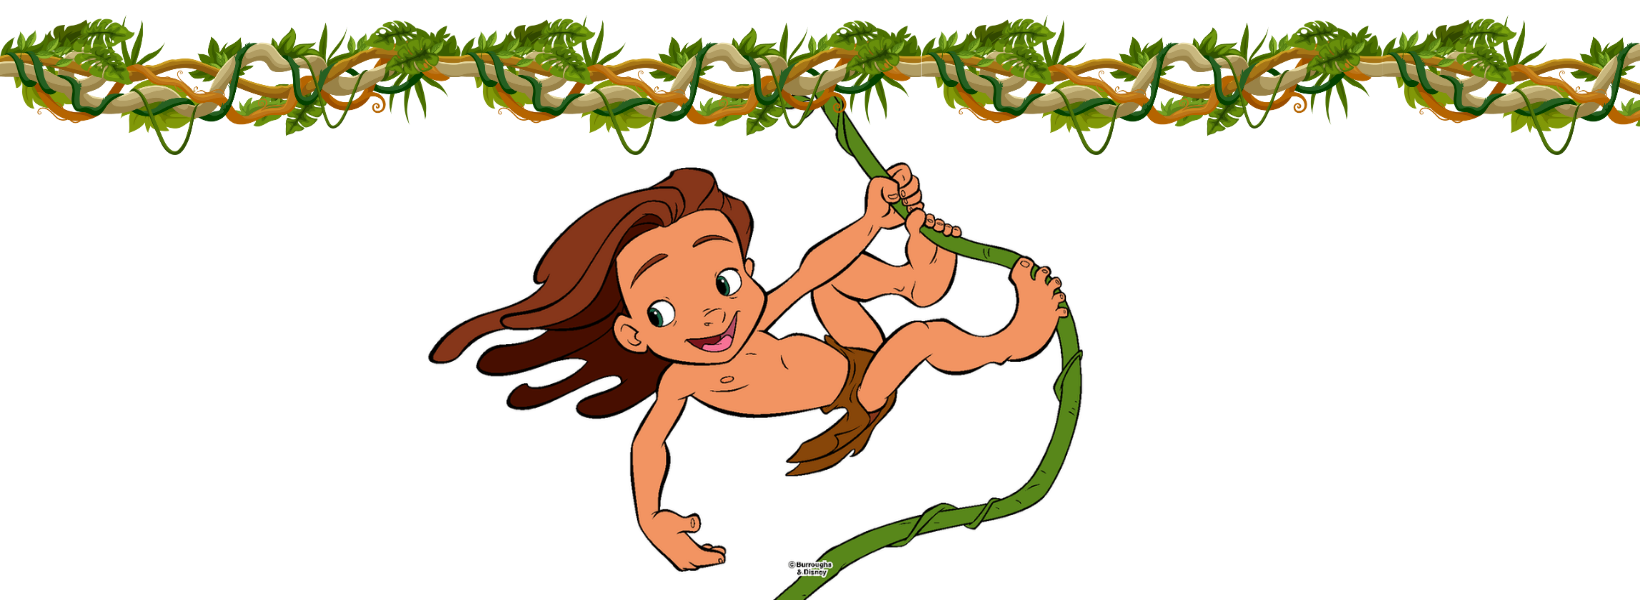 História infantil - Histórias de Aventura - As Aventuras de Tarzan